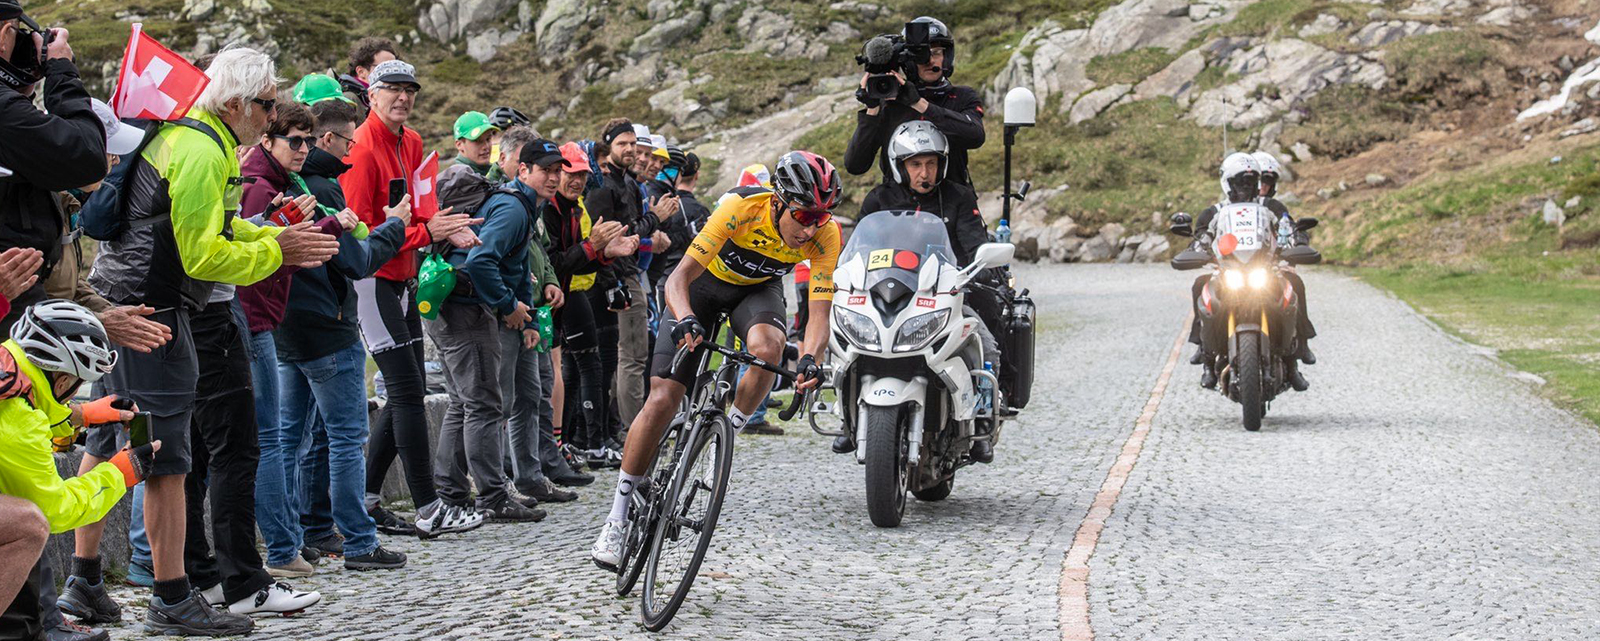 Egan Bernal wins Tour de Suisse